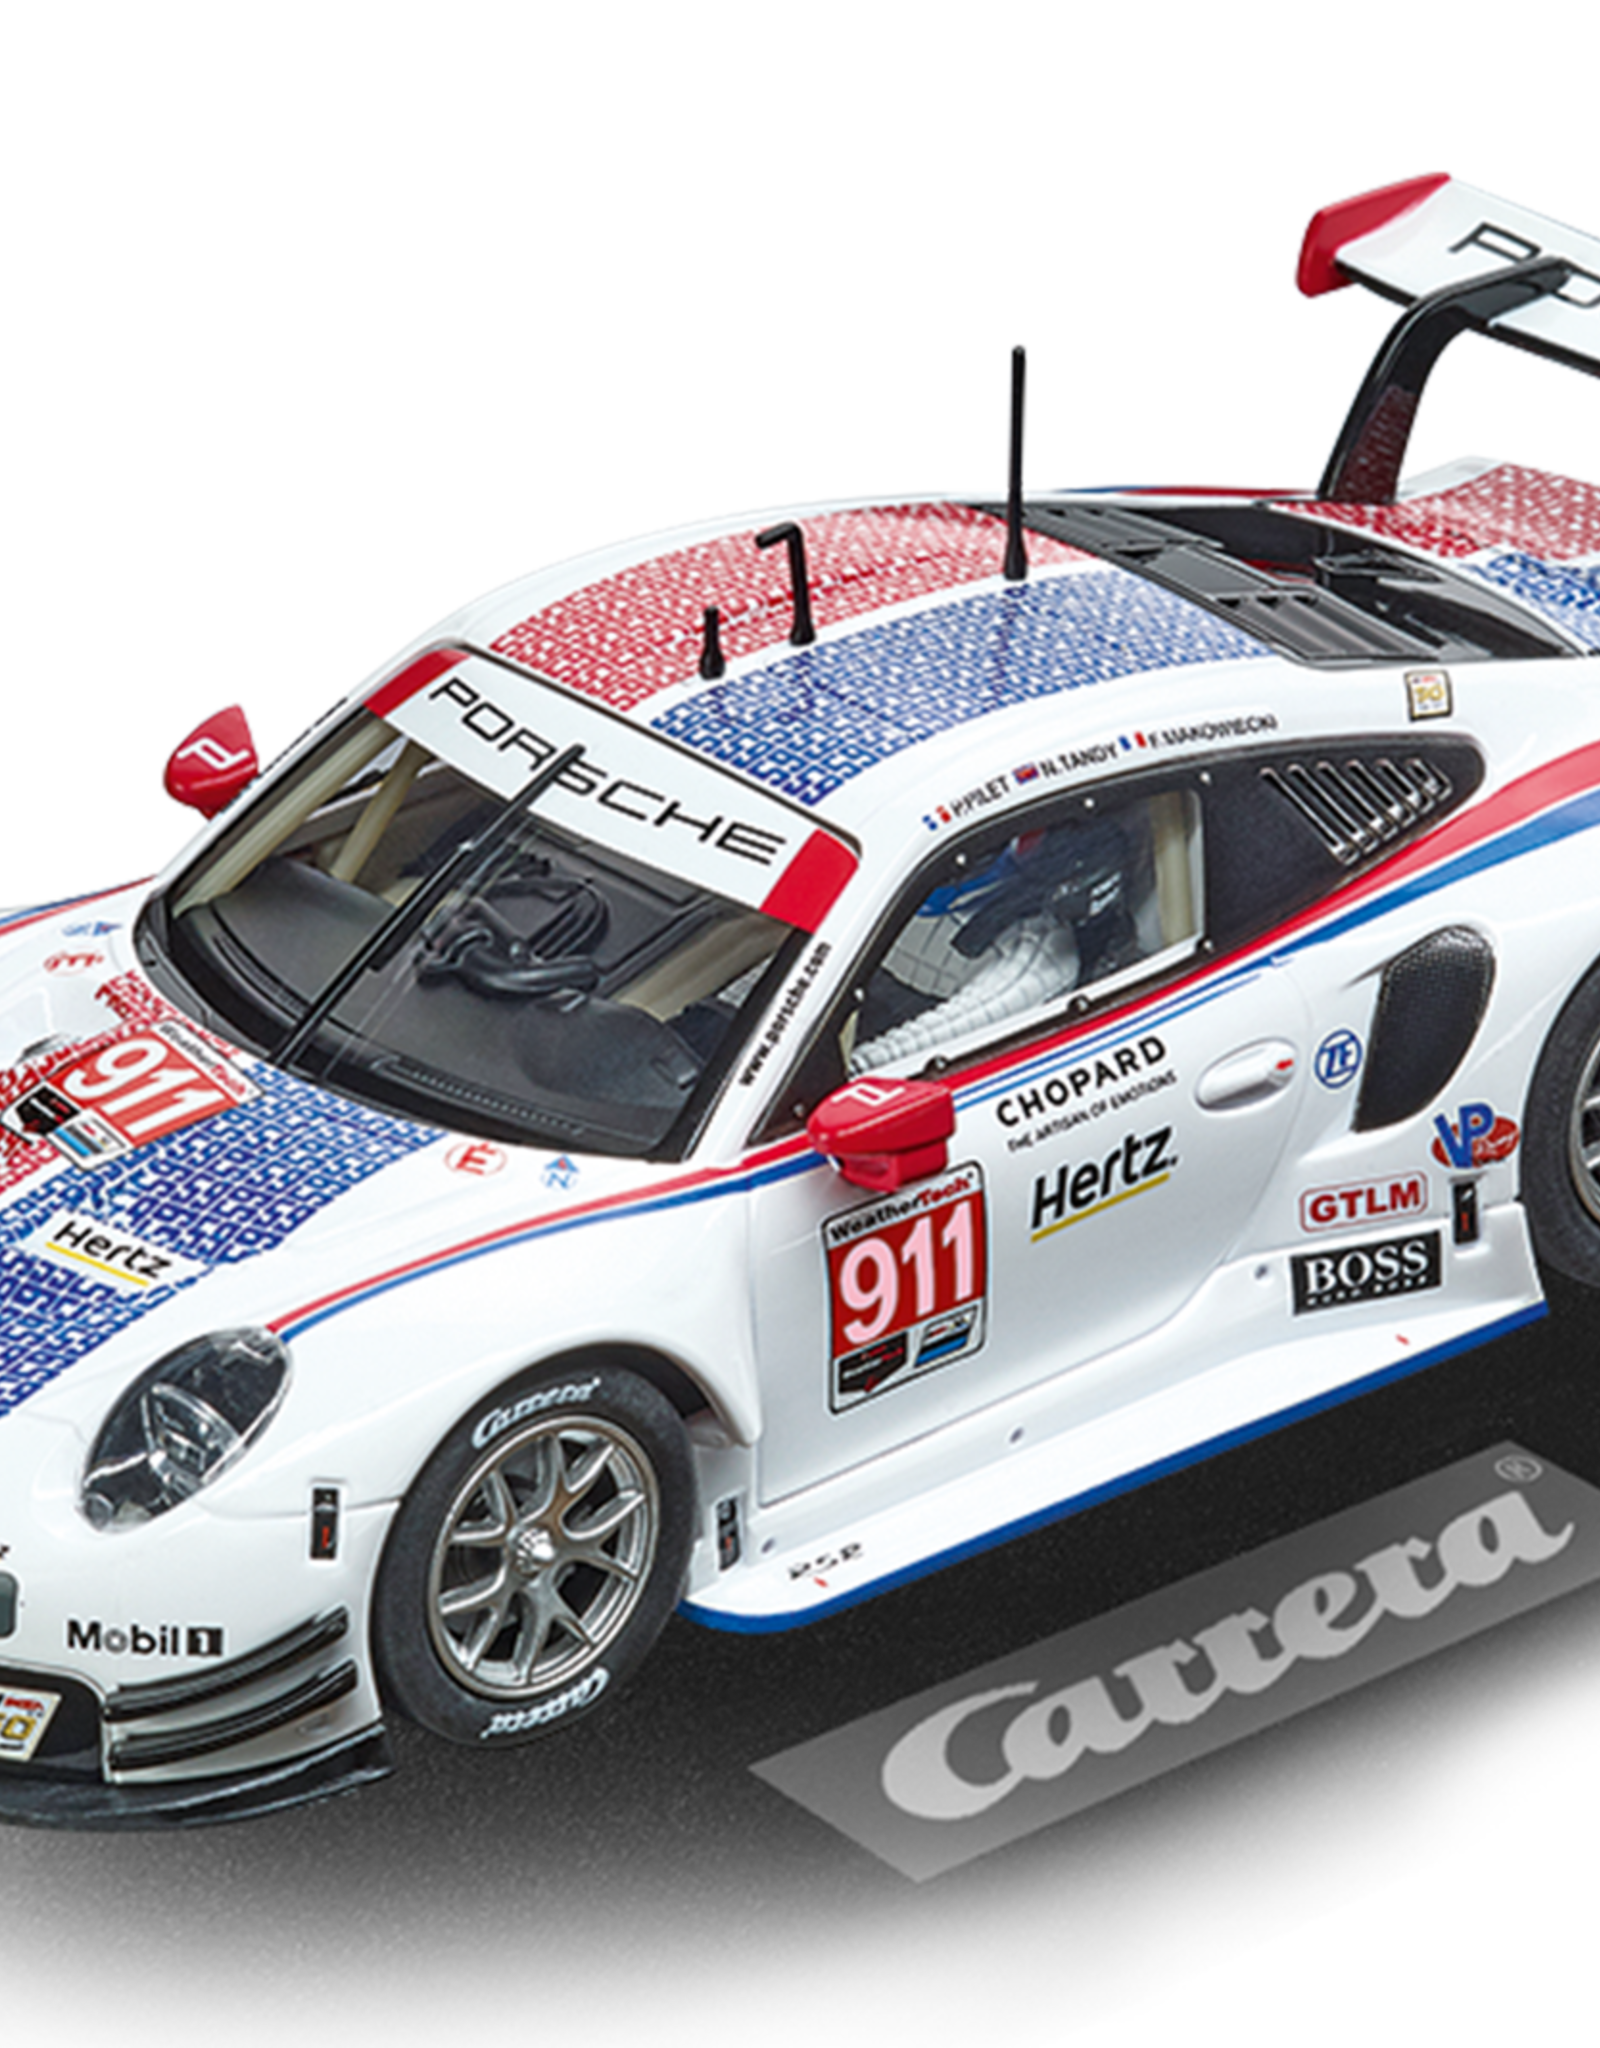 carrera CAR30915 Porsche 911 RSR Porsche GT Team #911, Digital 132 w/Lights